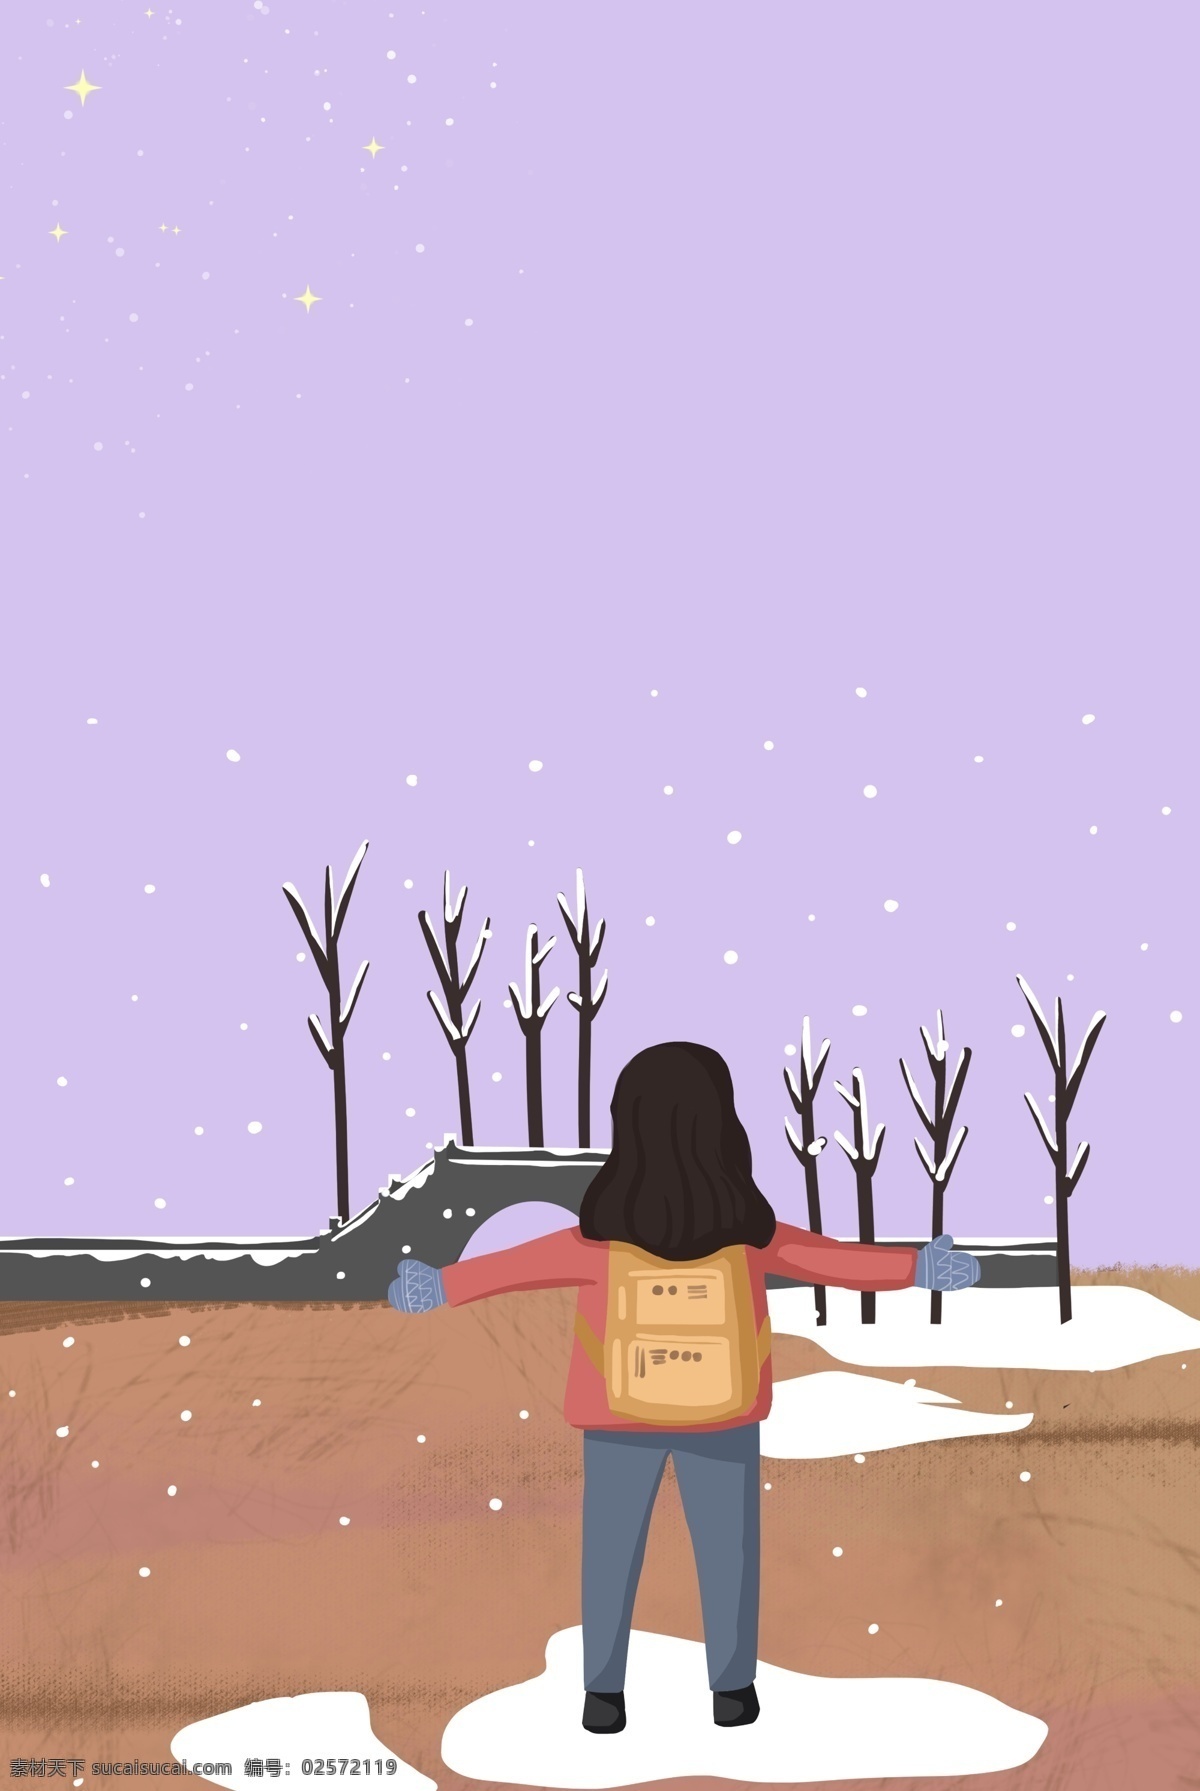 冬日 旅游 女孩 促销 海报 冬天 旅行 出行 雪地 一个人的旅行 插画风 促销海报